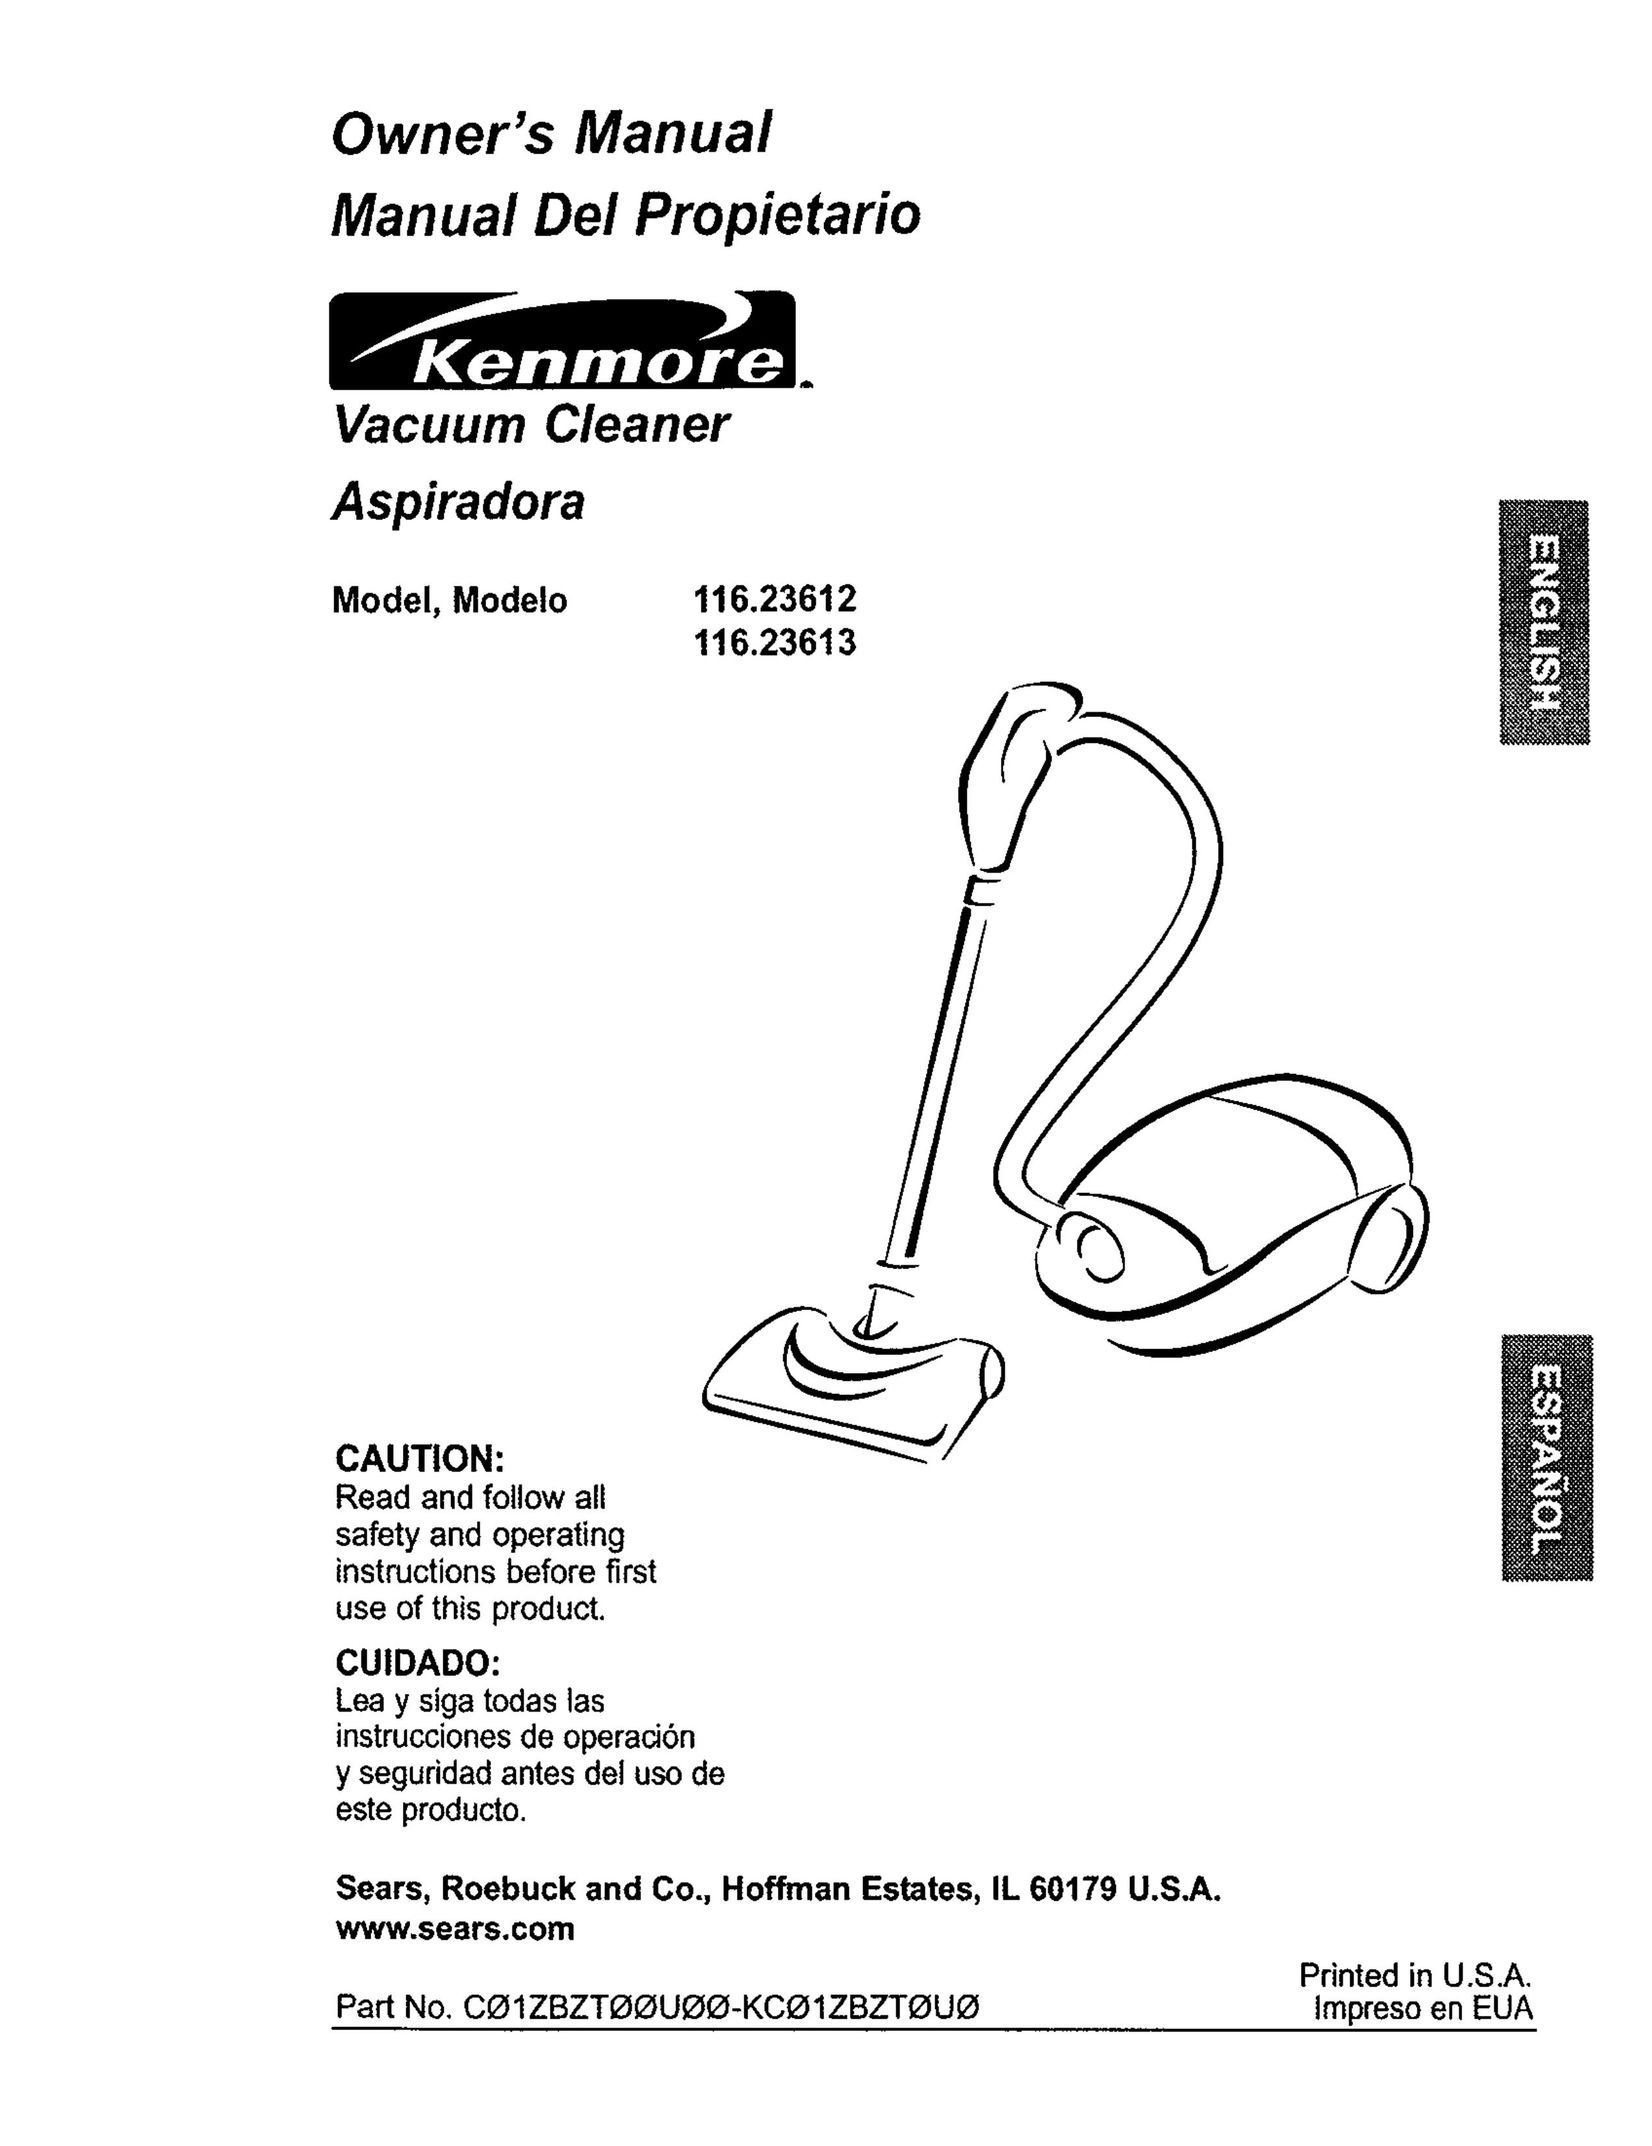 Kenmore 116.23613 Vacuum Cleaner User Manual